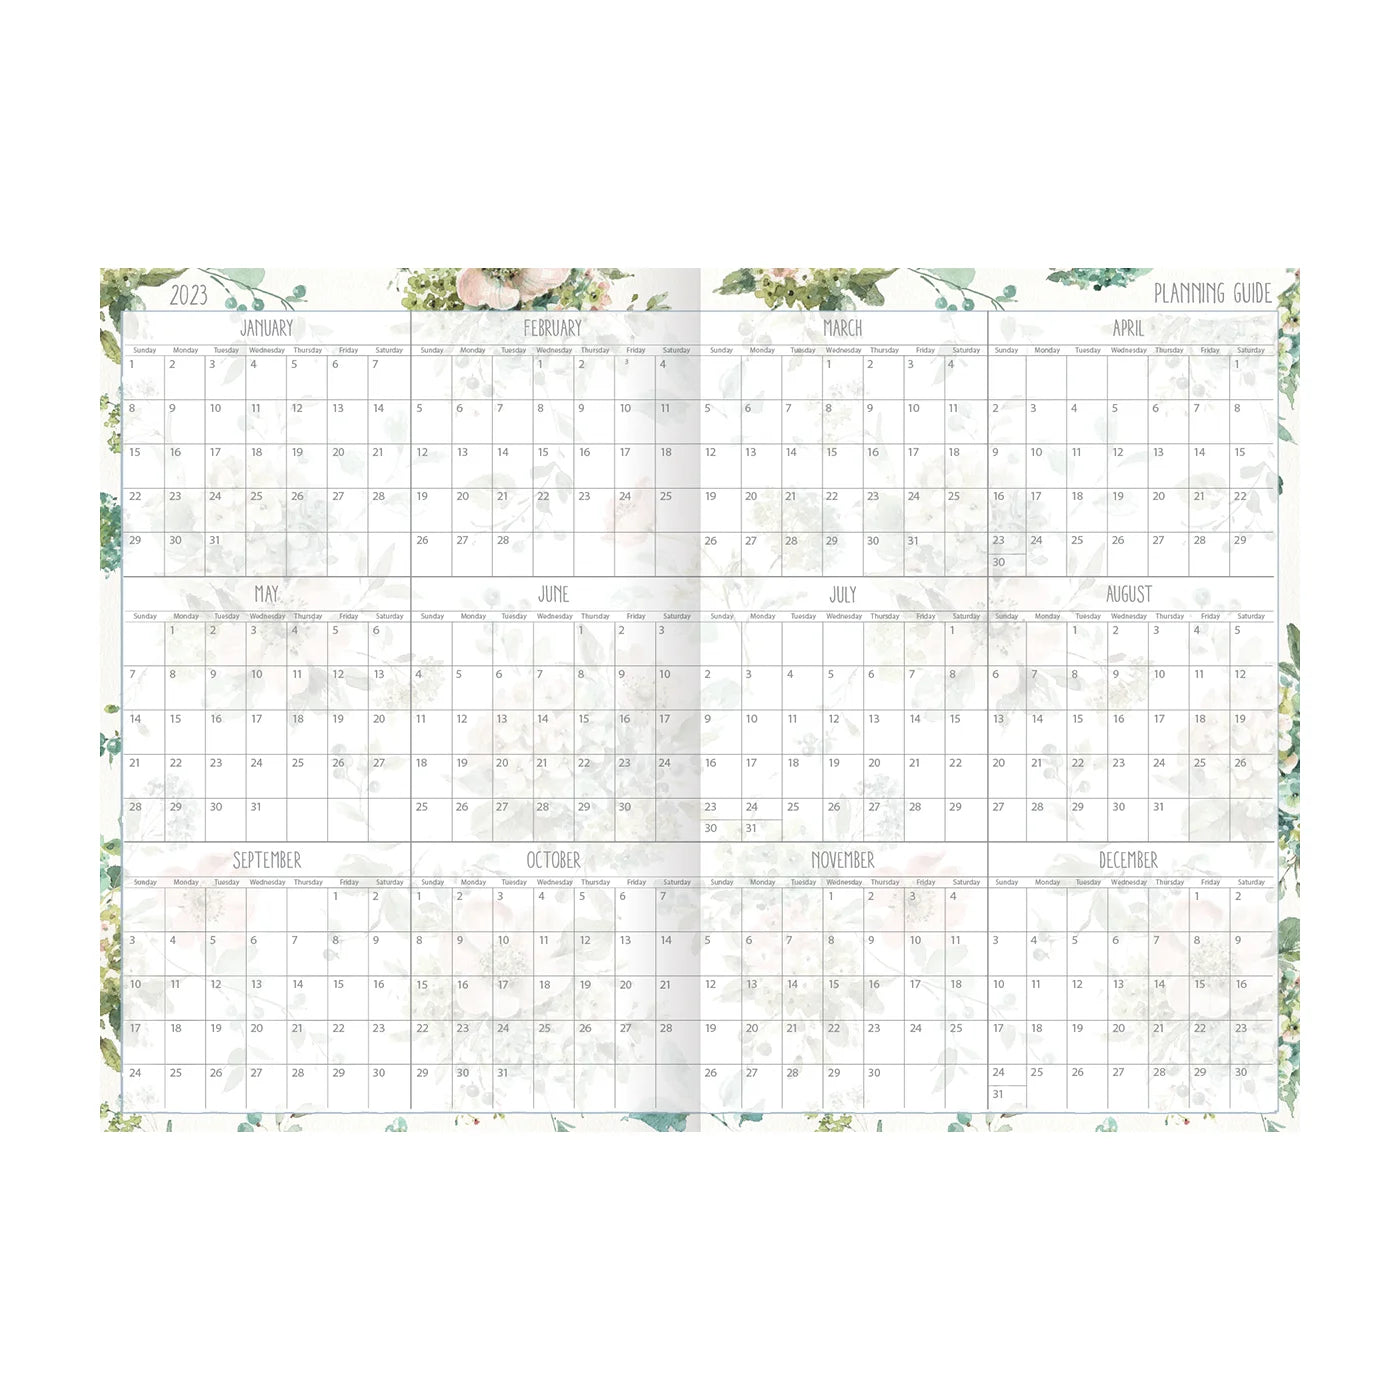 2023 LANG Watercolor Seasons - 13 Diary/Planner